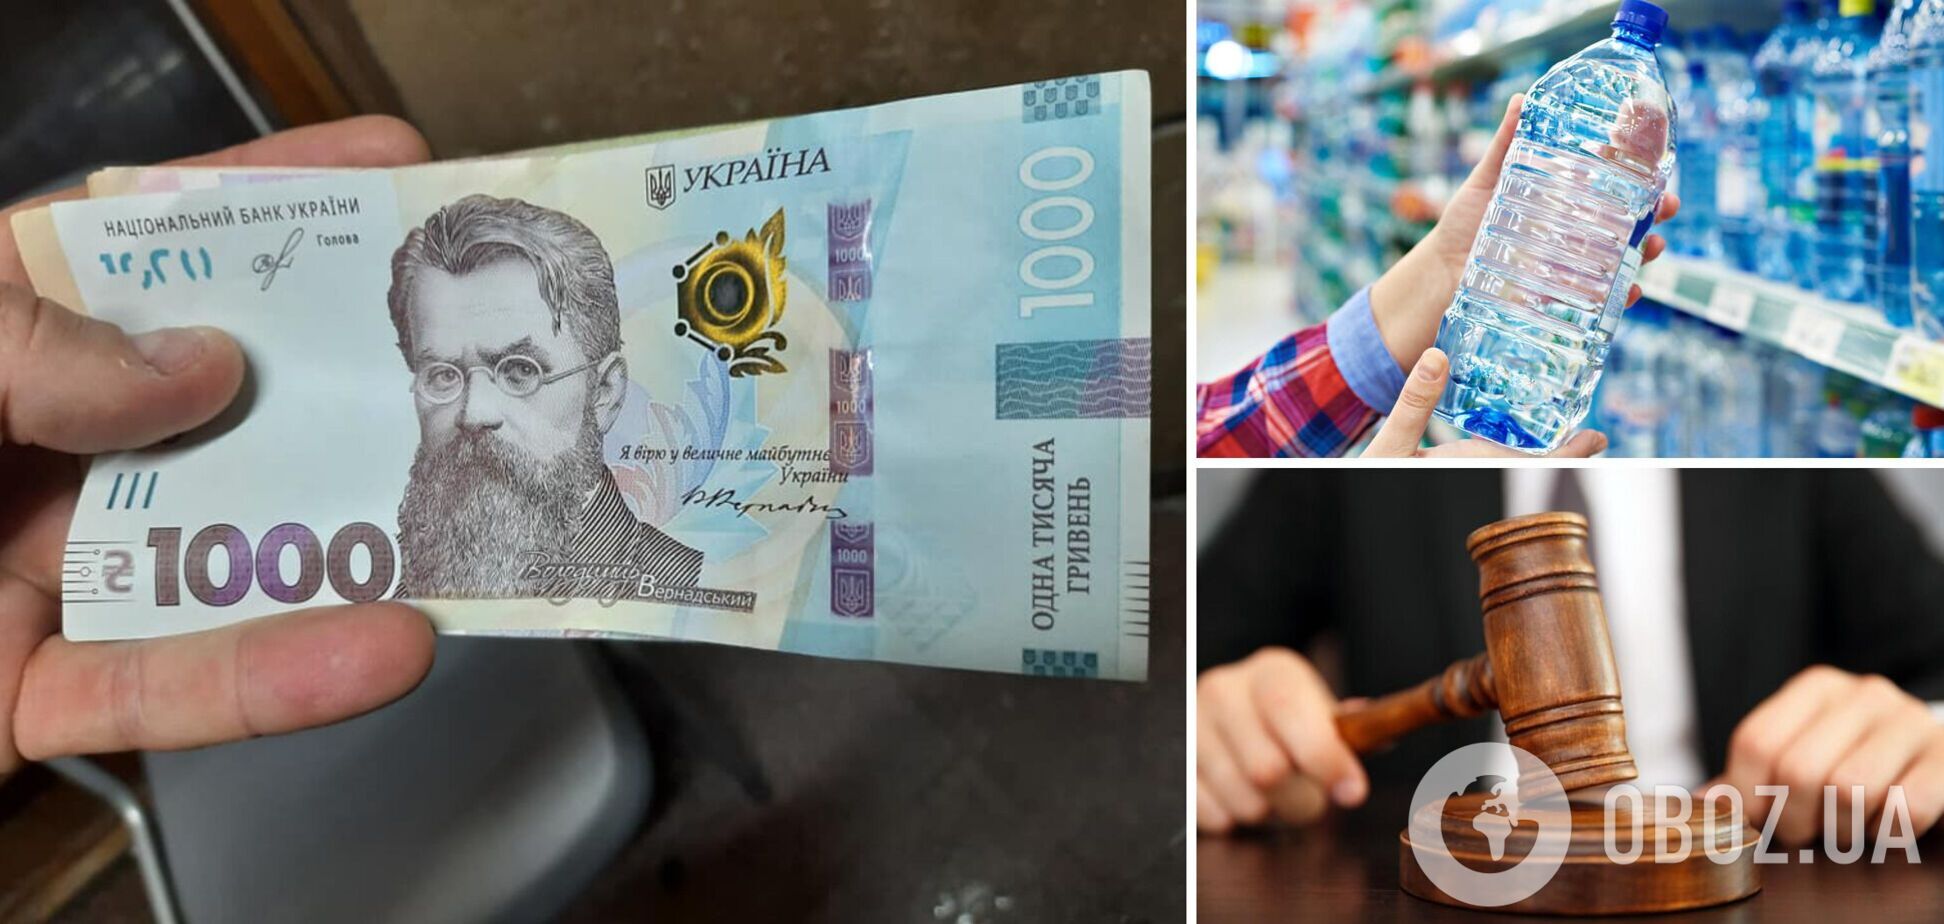 Продавец минералки украл у покупателя 1000 грн: суд приговорил злоумышленника к трем годам тюрьмы